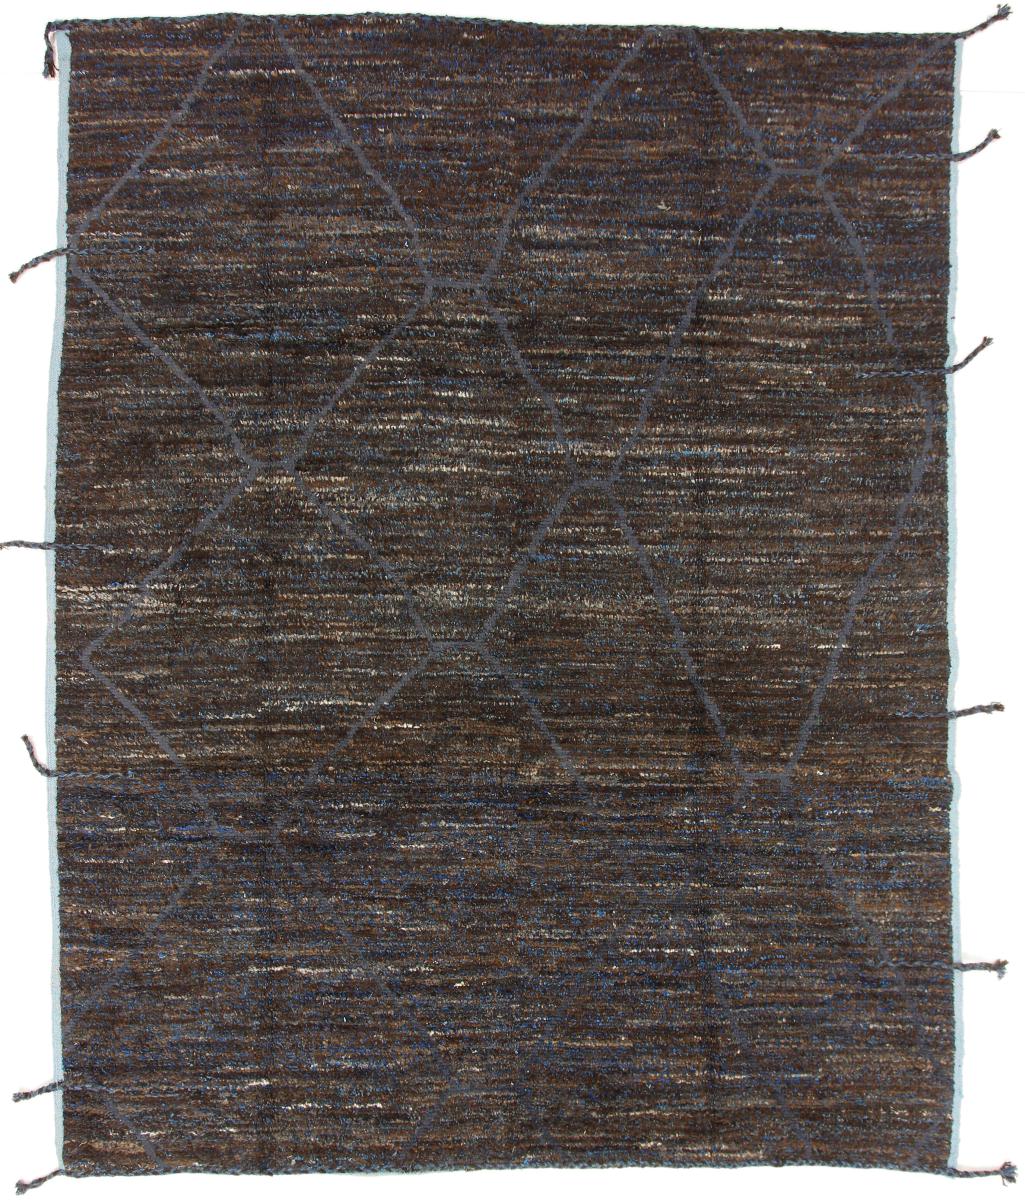 Pakistaans tapijt Berbers Maroccan Design 301x240 301x240, Perzisch tapijt Handgeknoopte